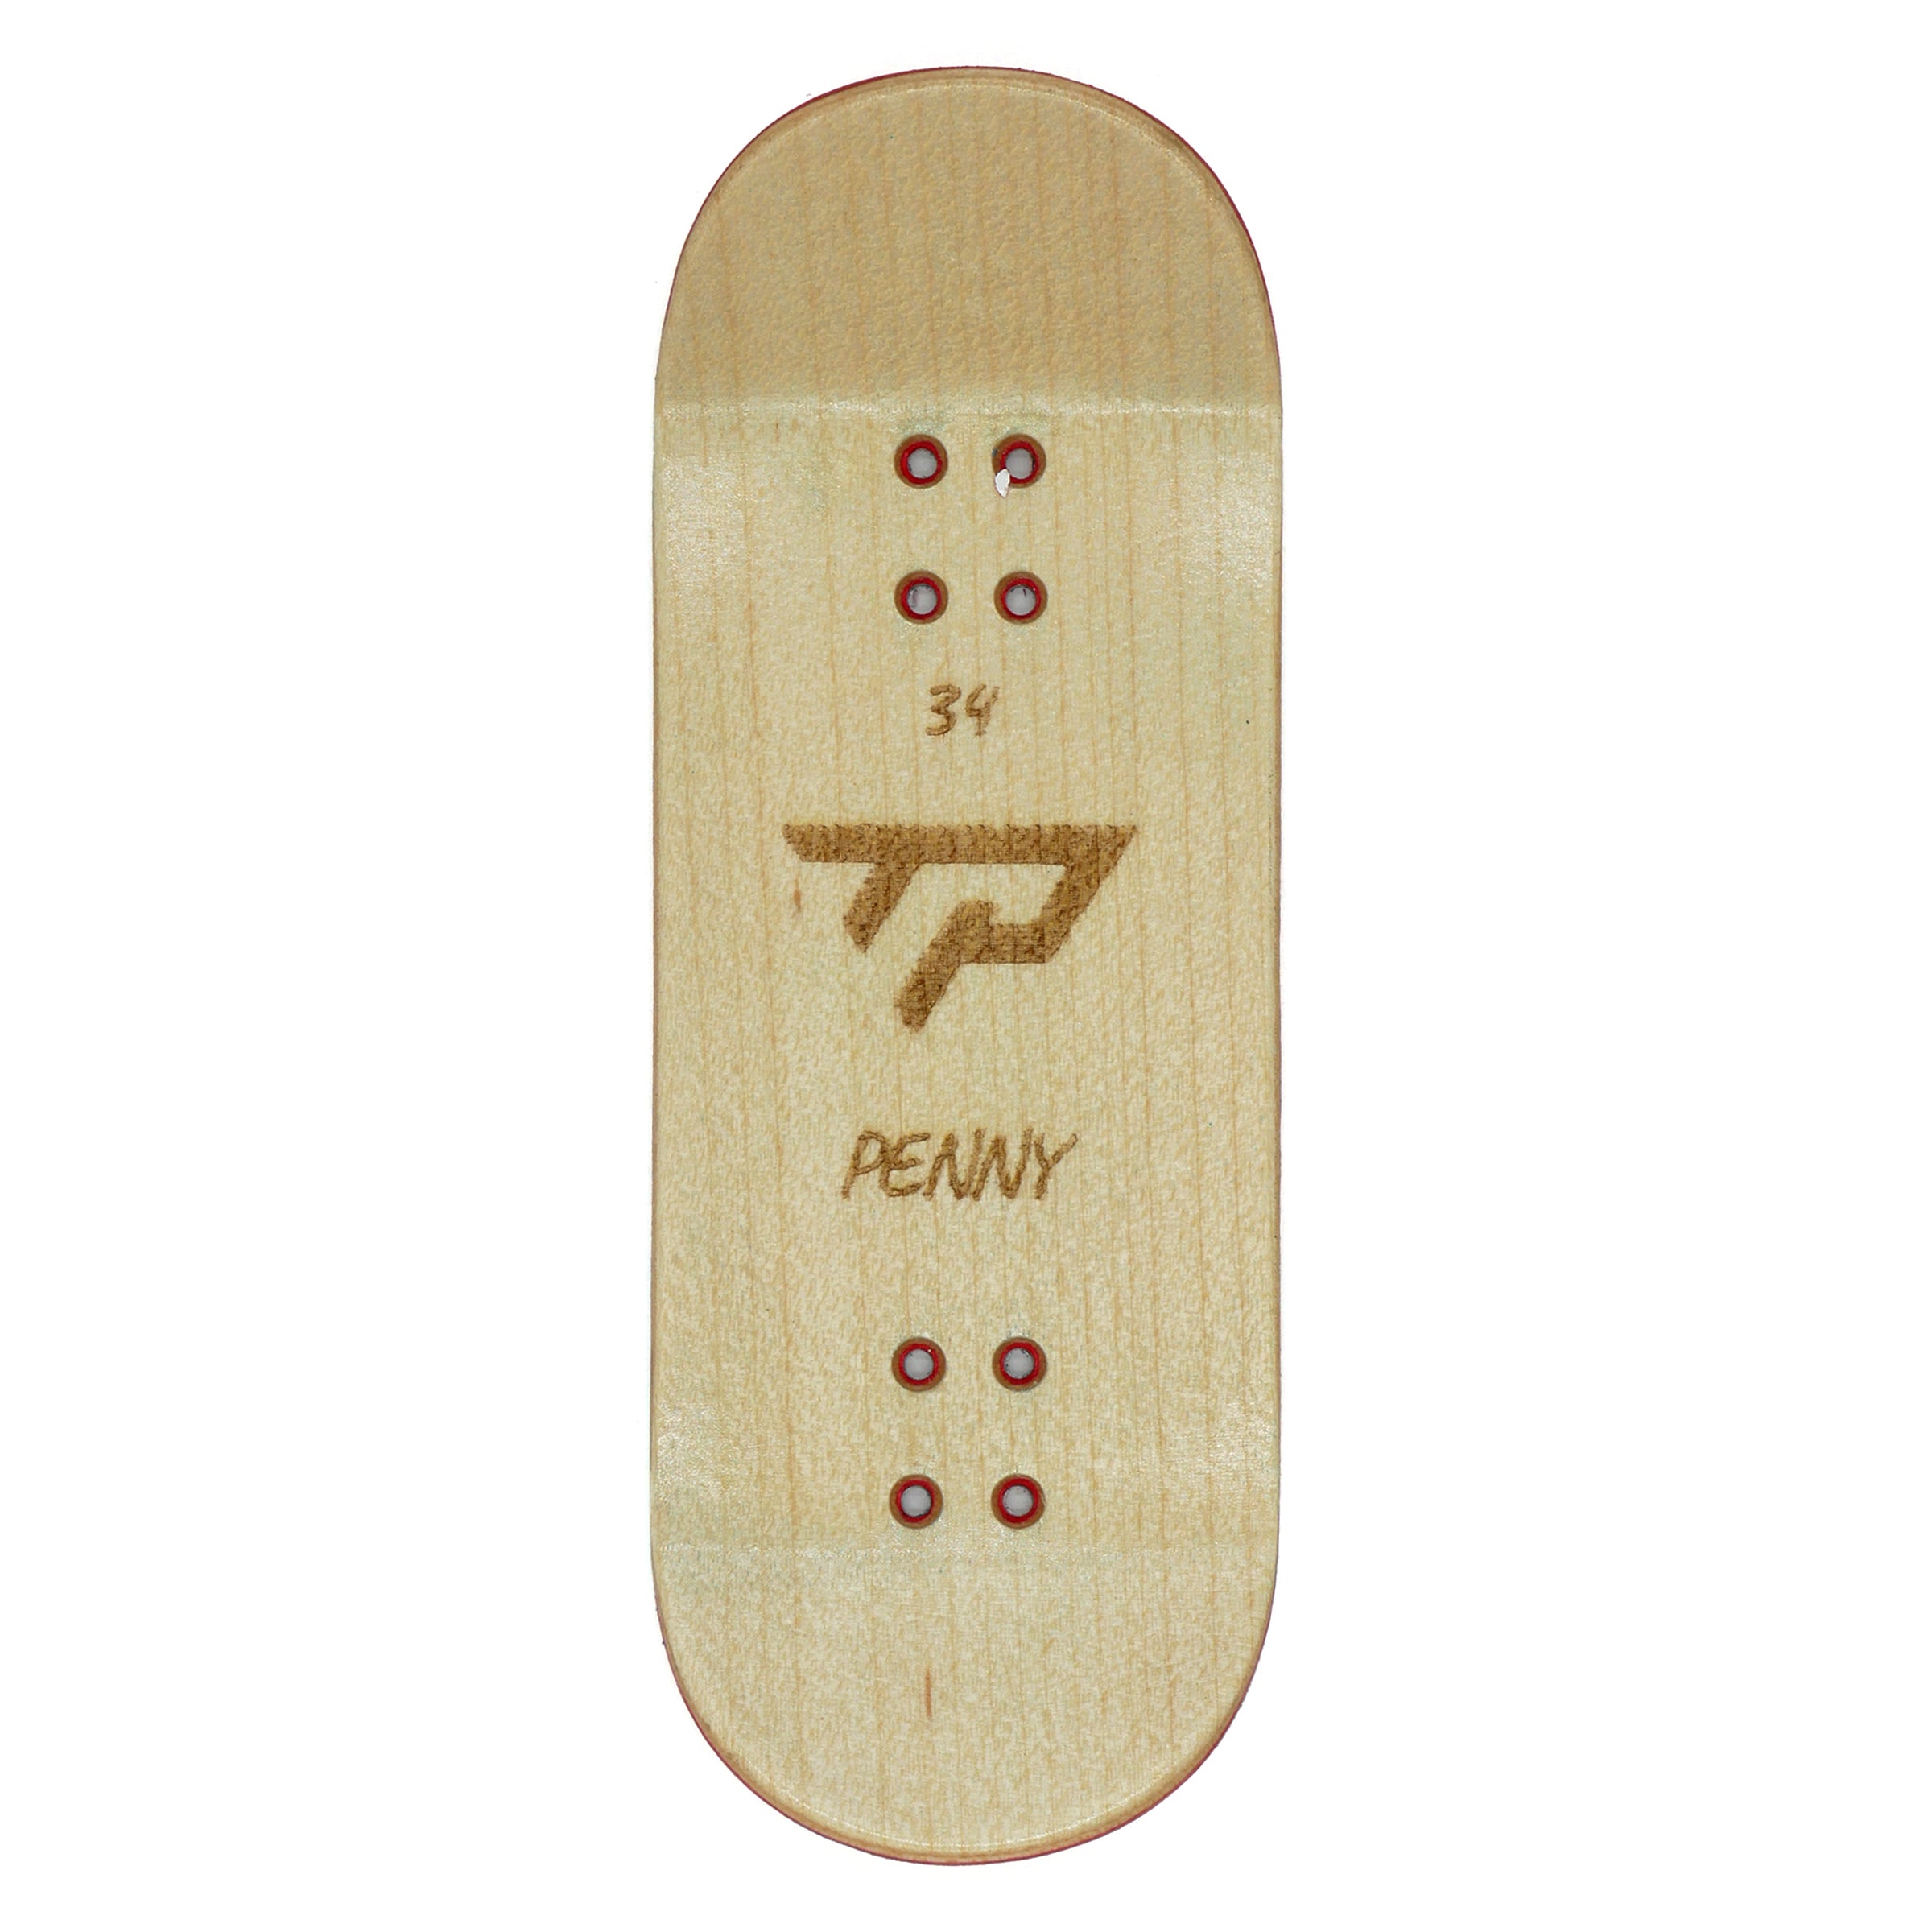 TP "Slush Cup" Split Ply Fingerboard Deck MINI Skate Shop TP Decks Fingerboards    Slushcult